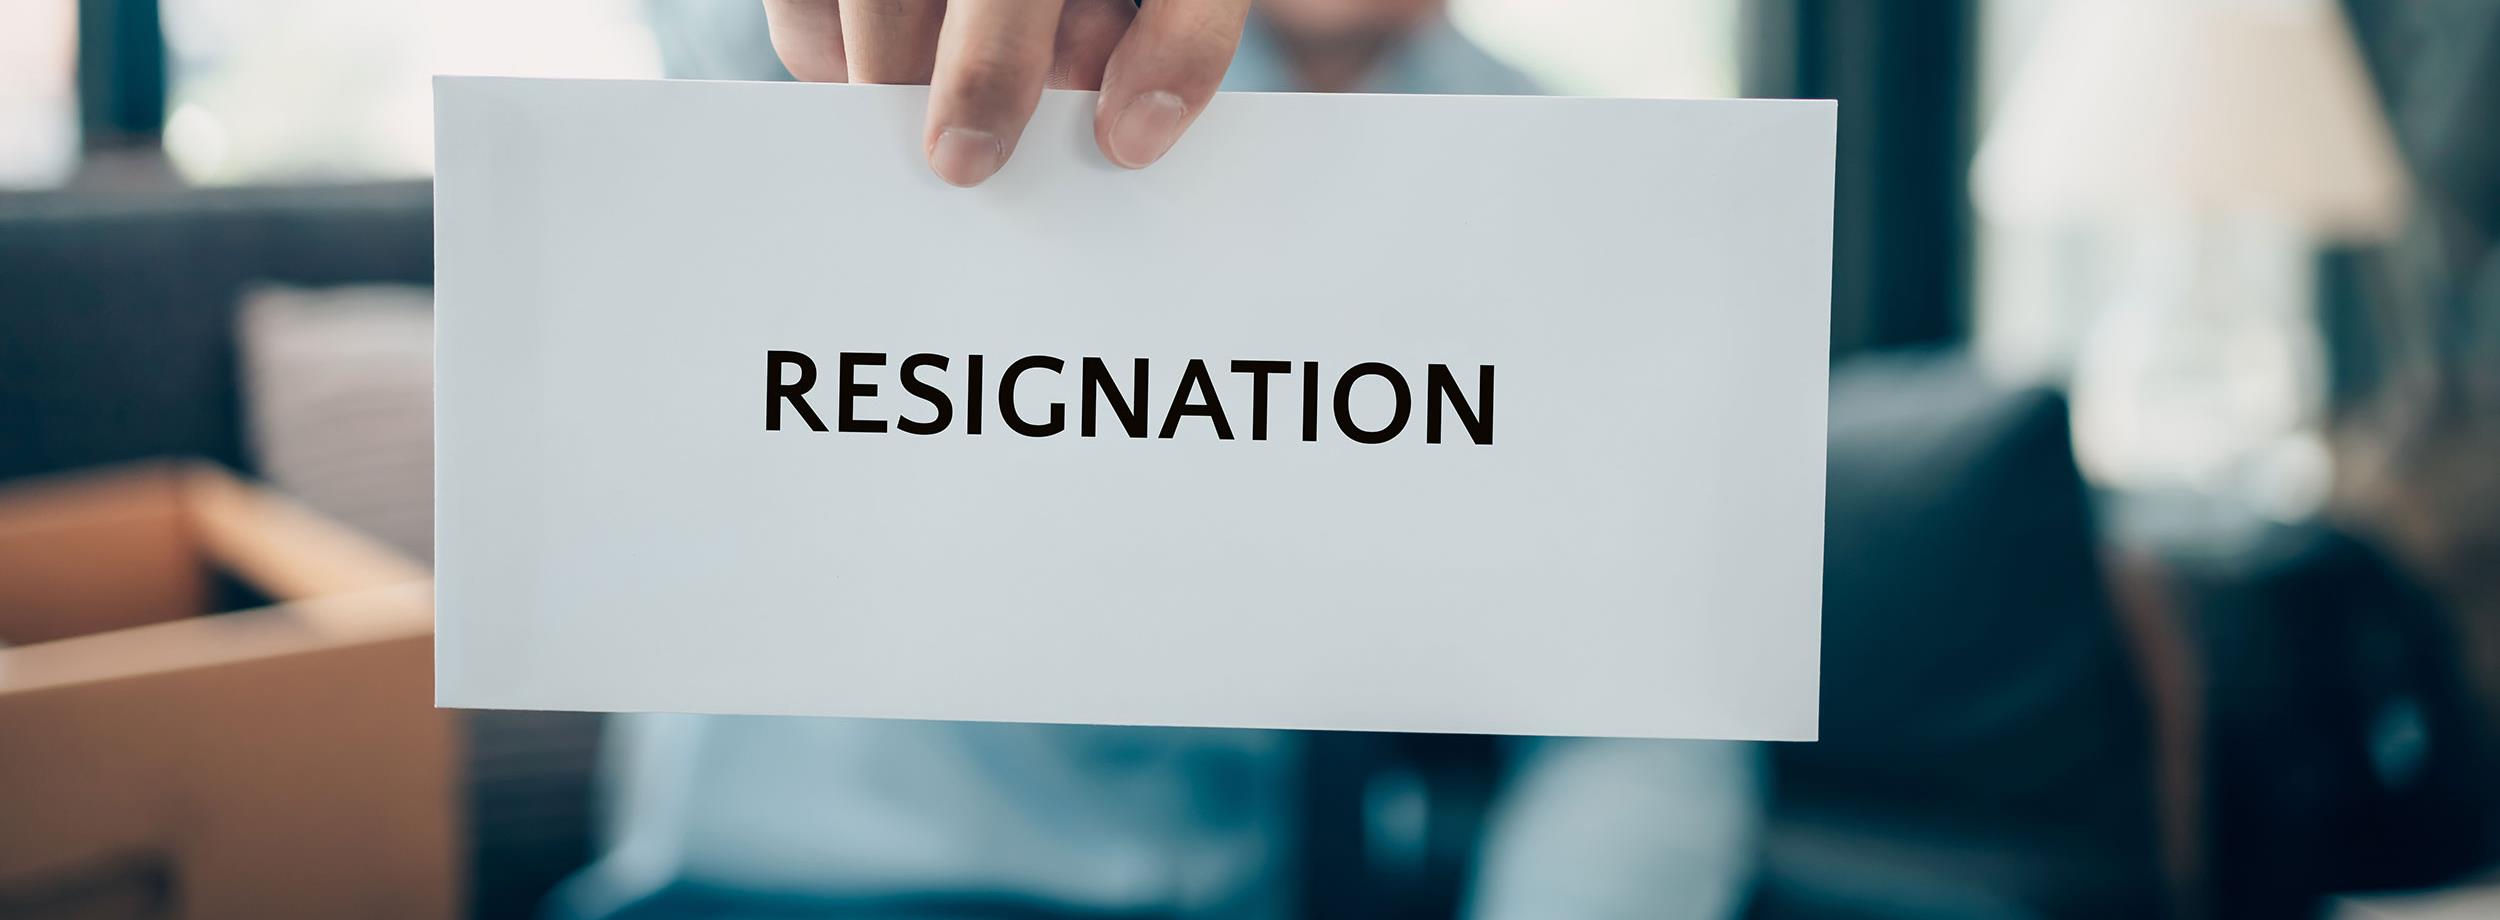 resignations